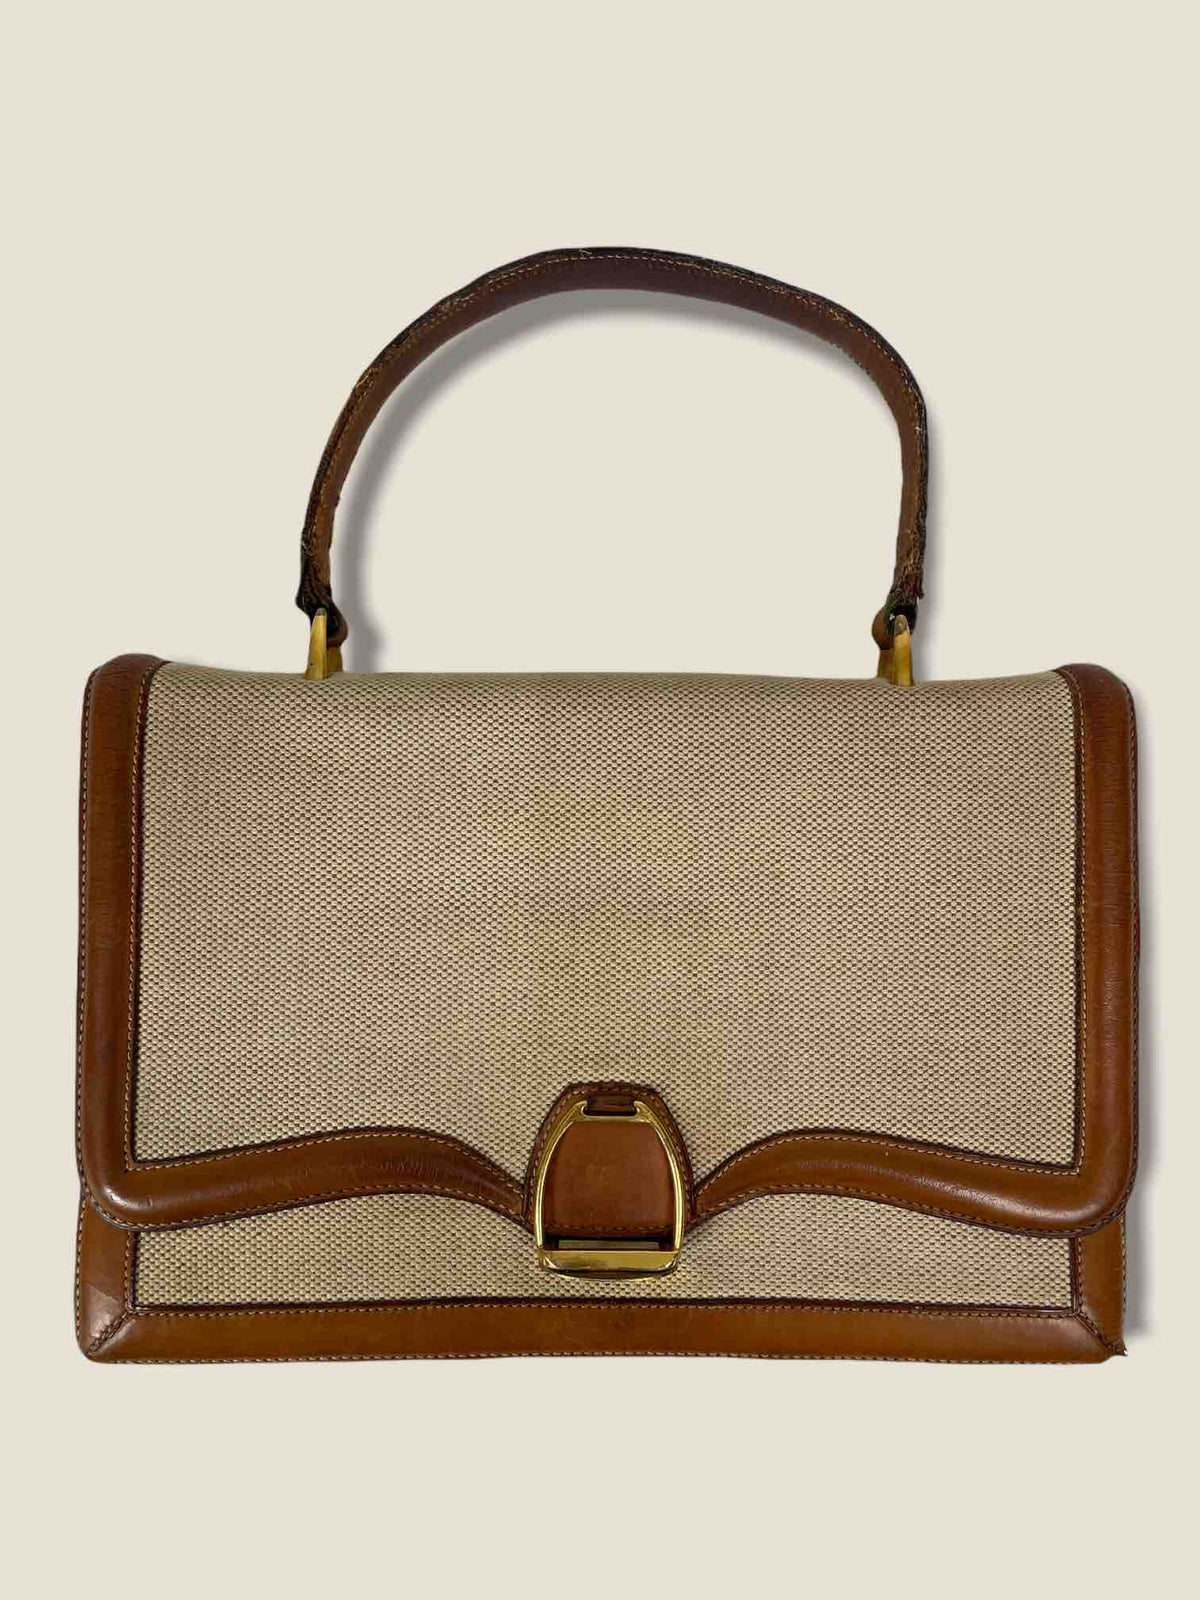 Hermes bag - 1960s second hand vintage